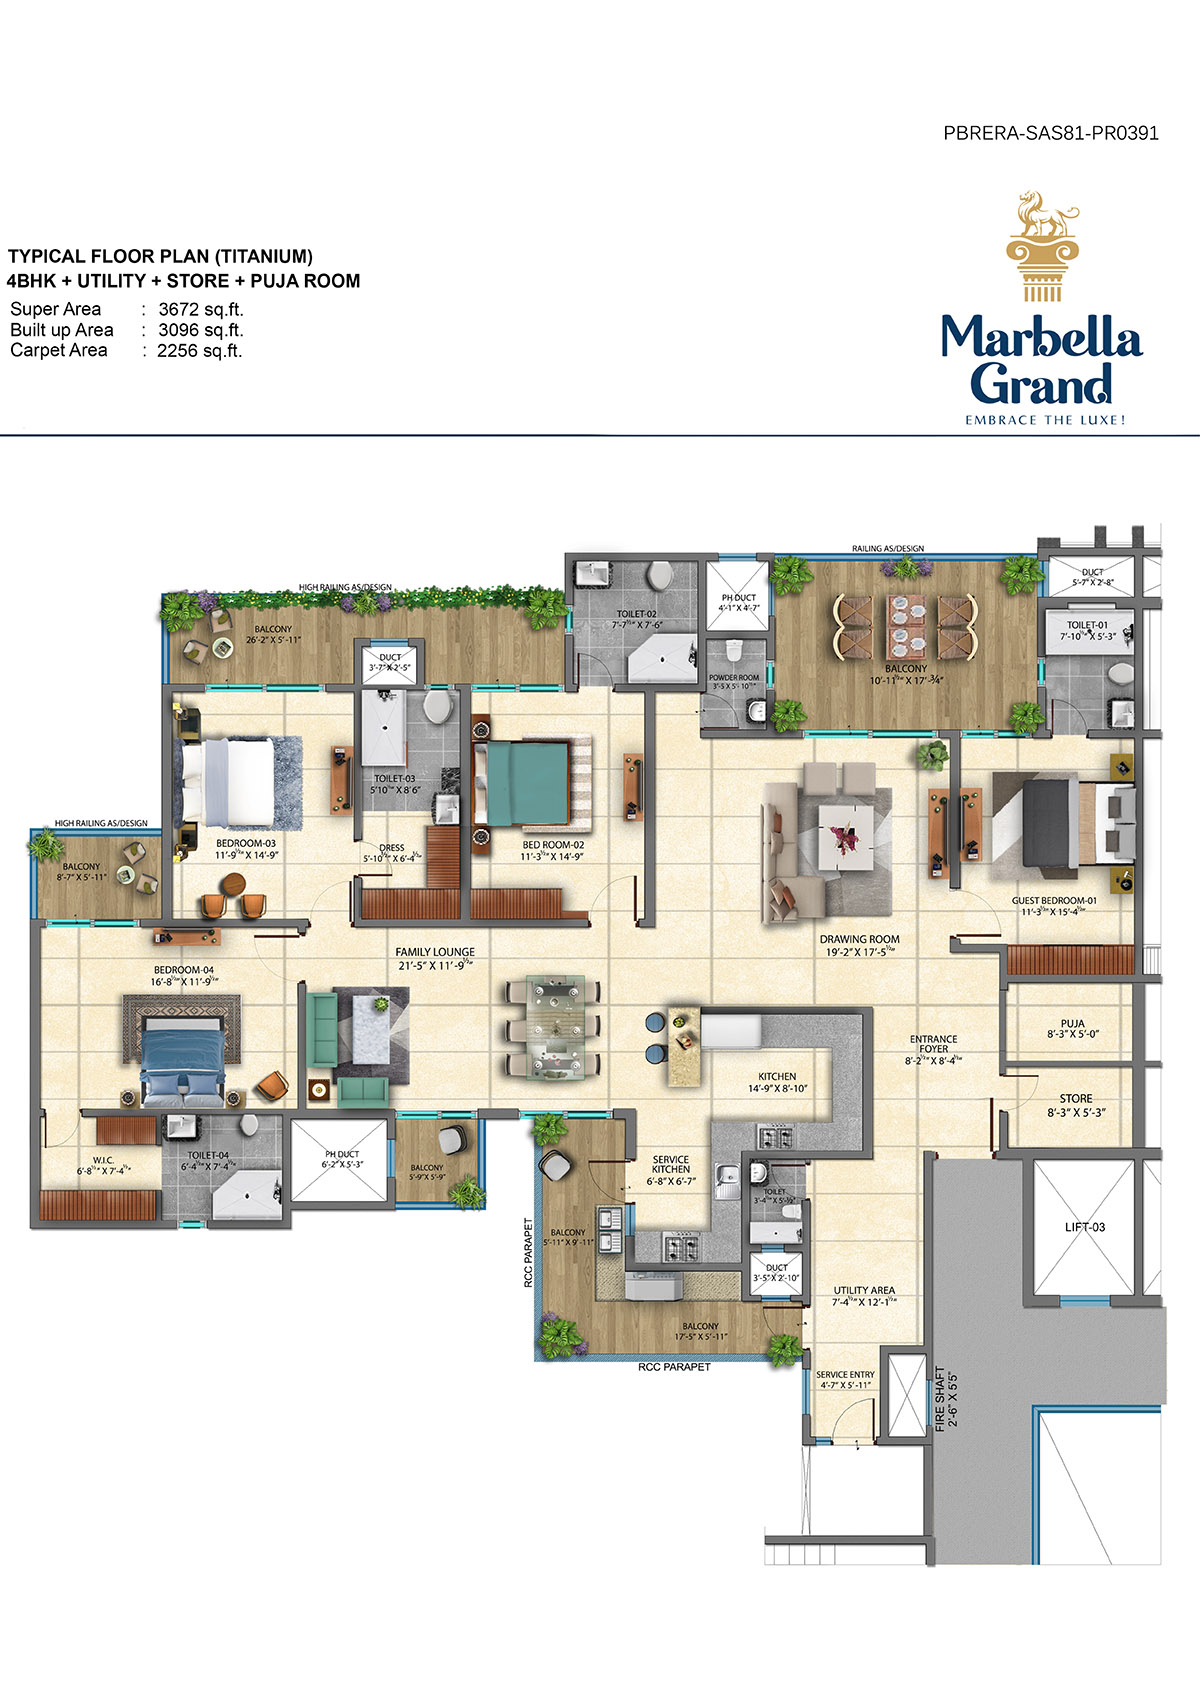 Titanium Marbella Grand- floor plan